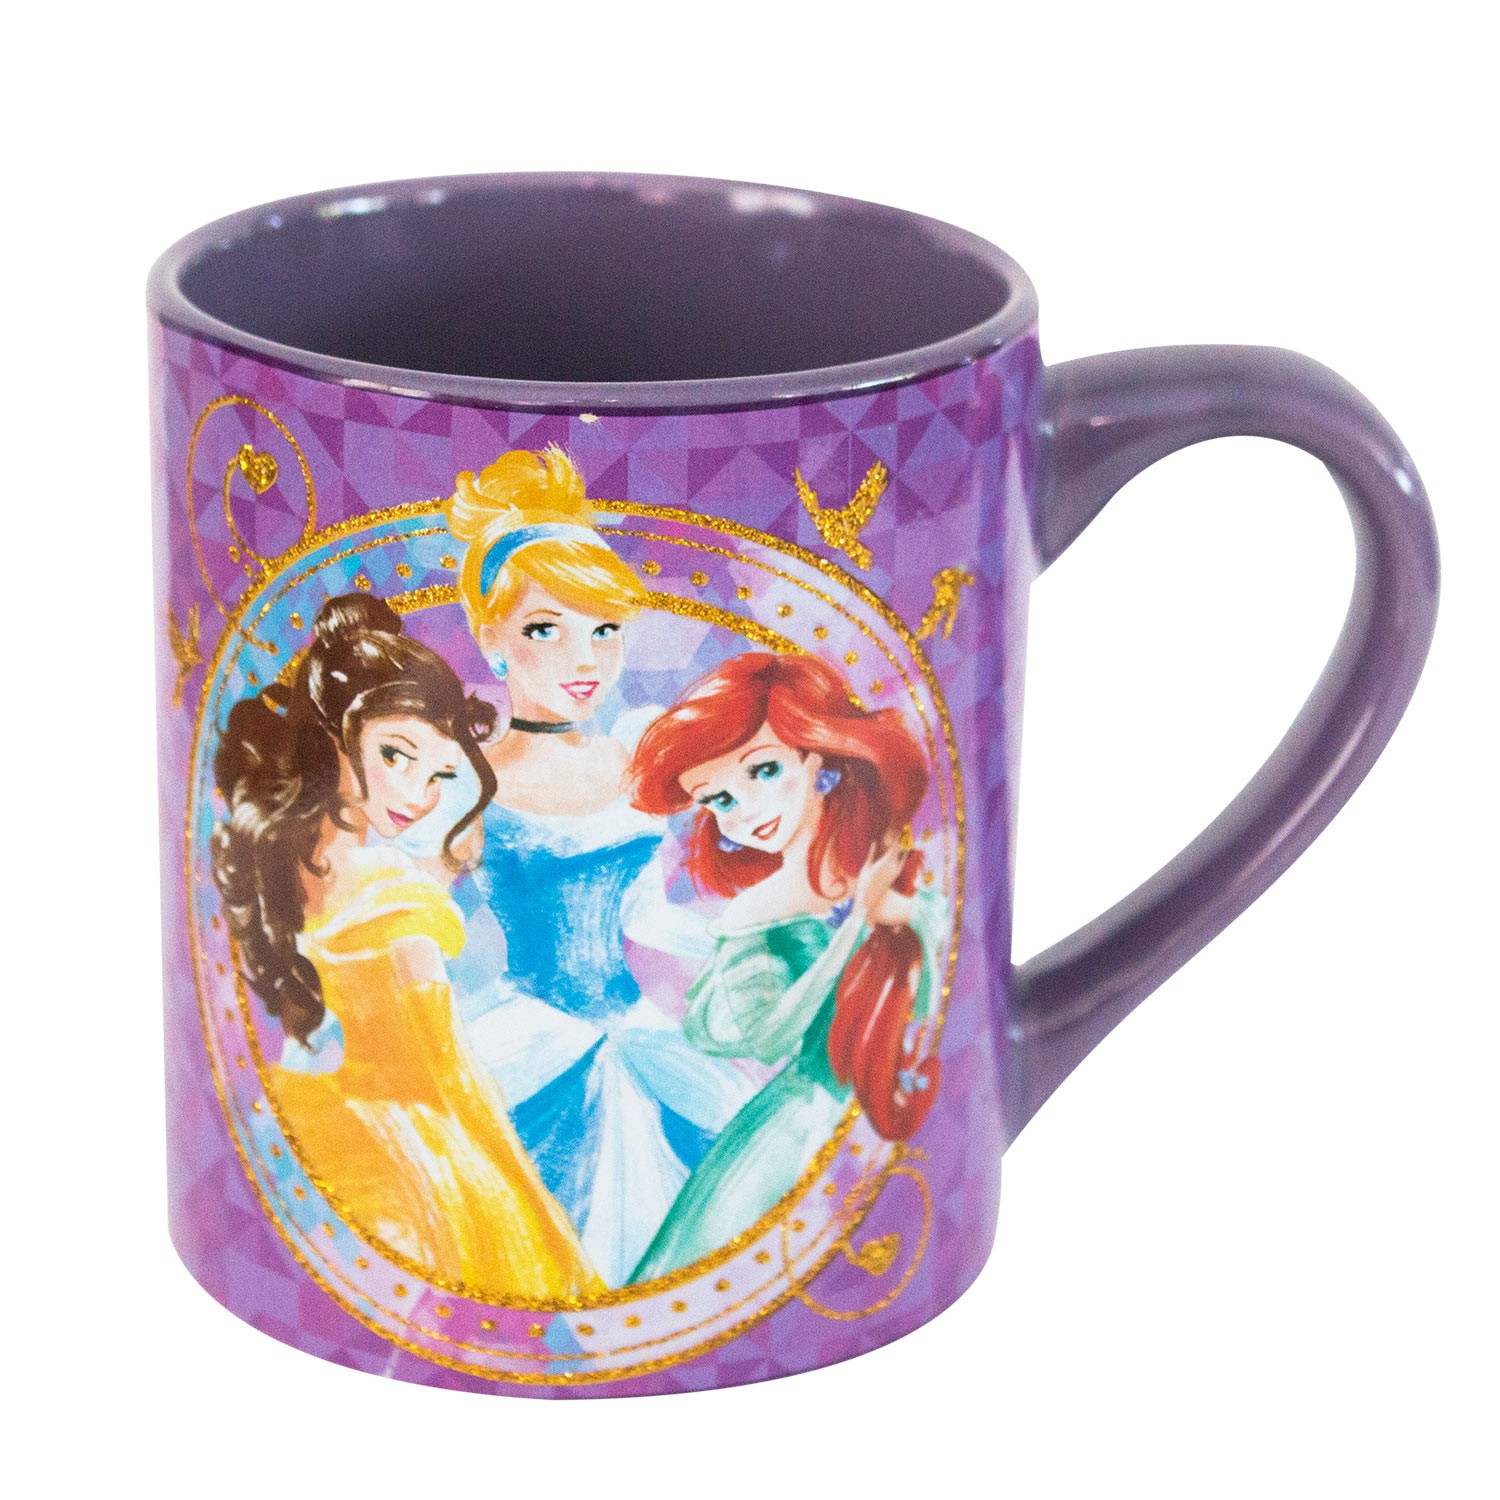 Disney Princesses Ceramic Coffee Mug